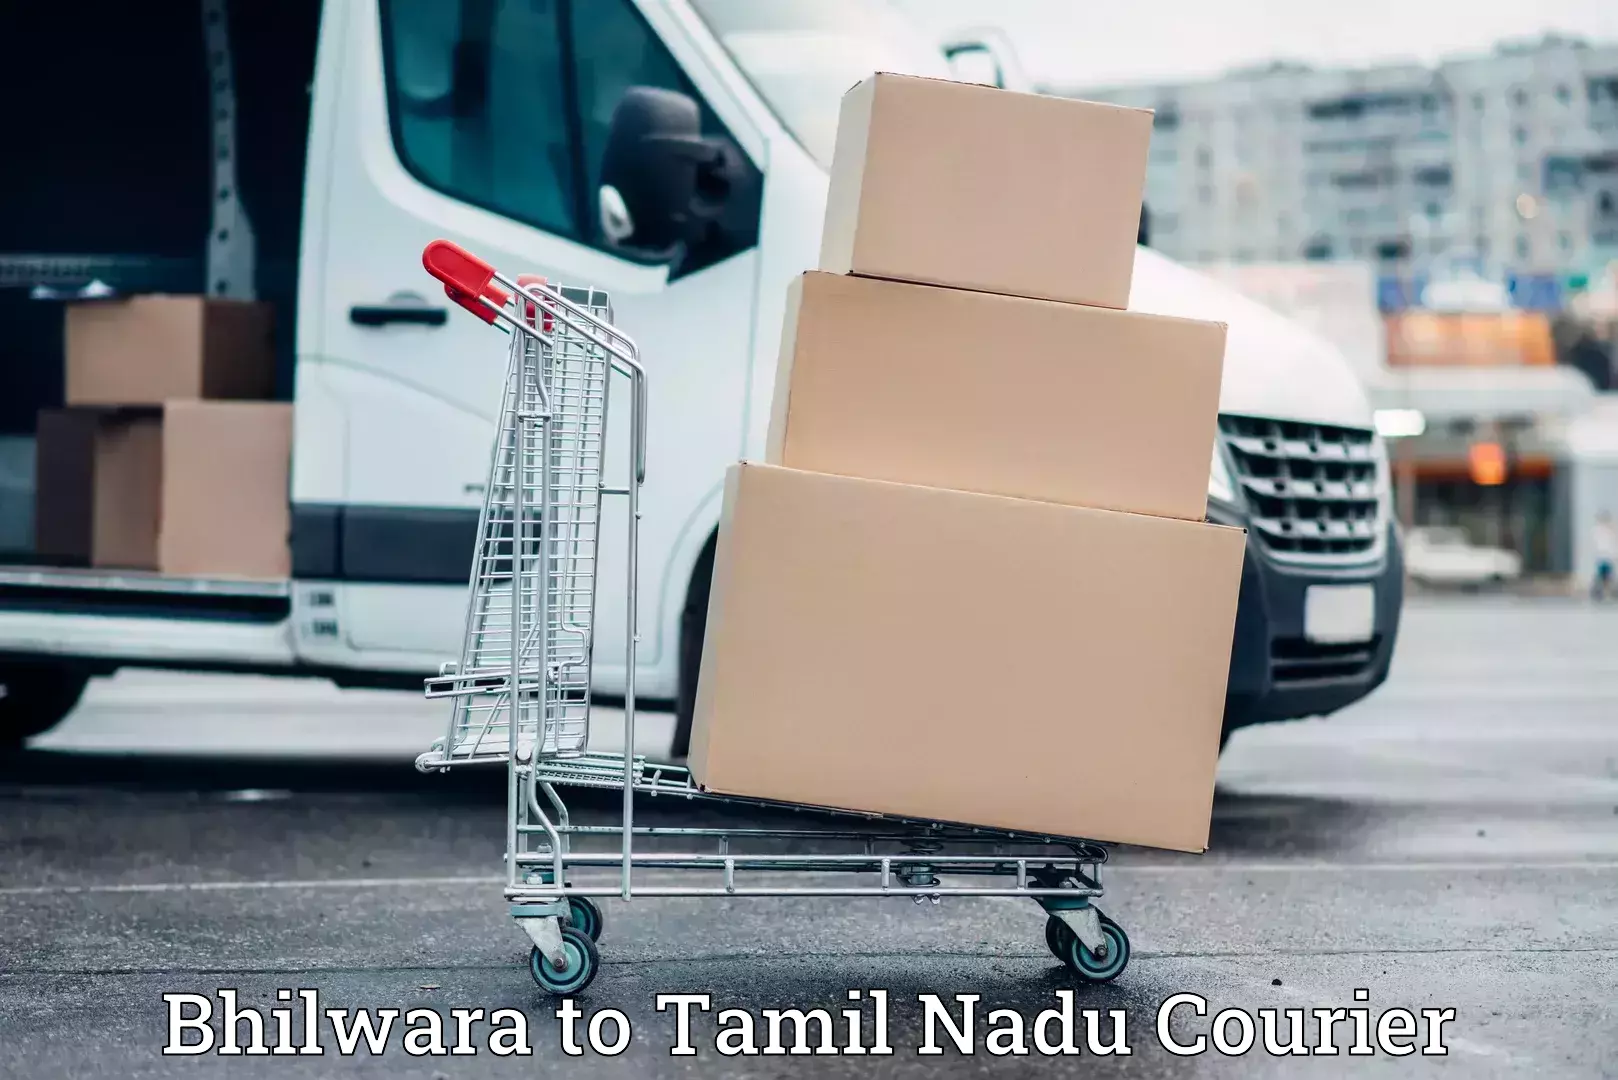 Specialized moving company Bhilwara to Tamil Nadu